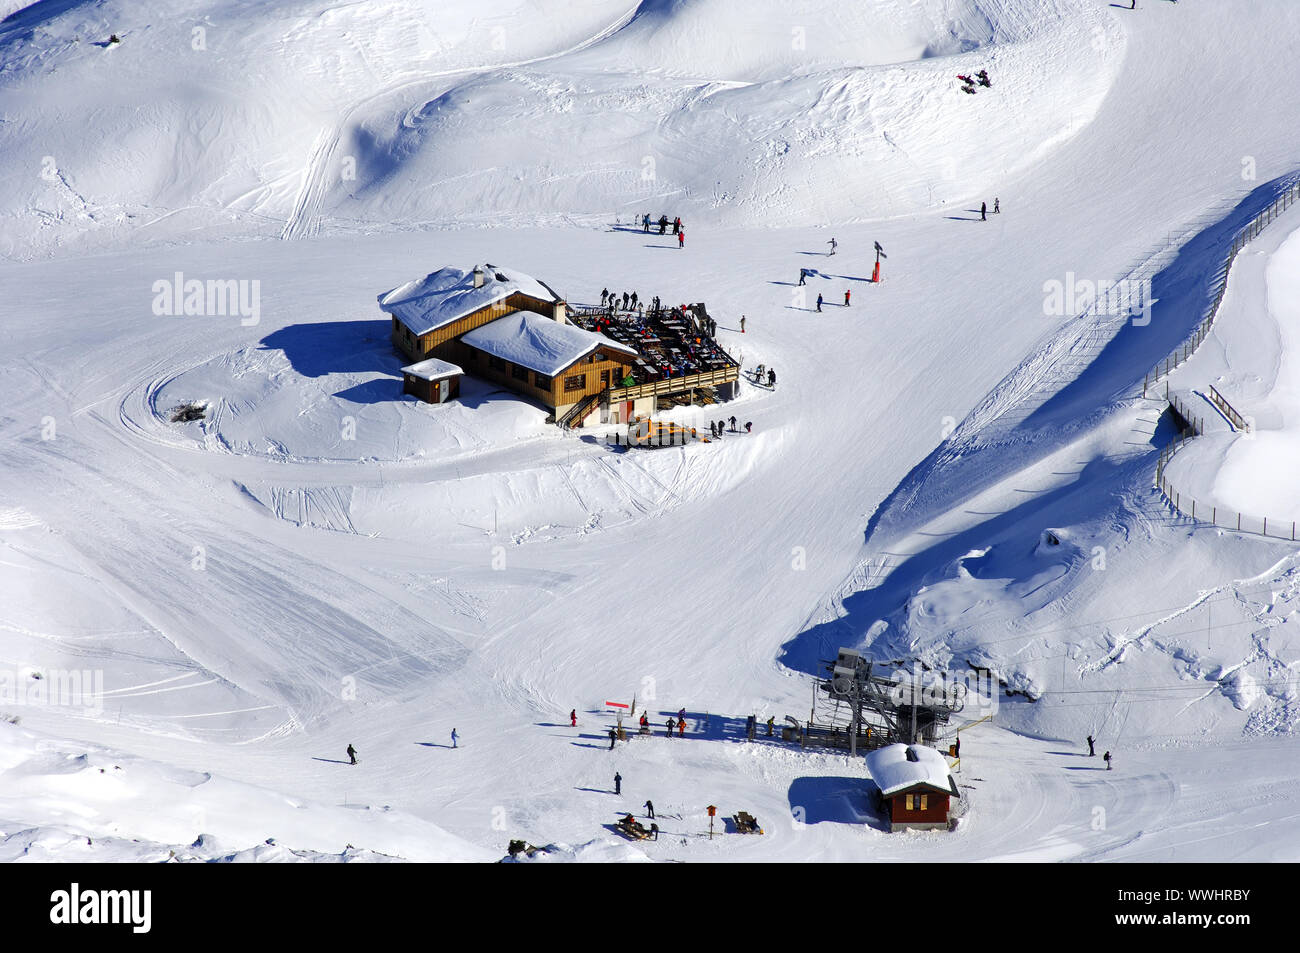 In the ski area Trois Vallees, Savoyen, France Stock Photo